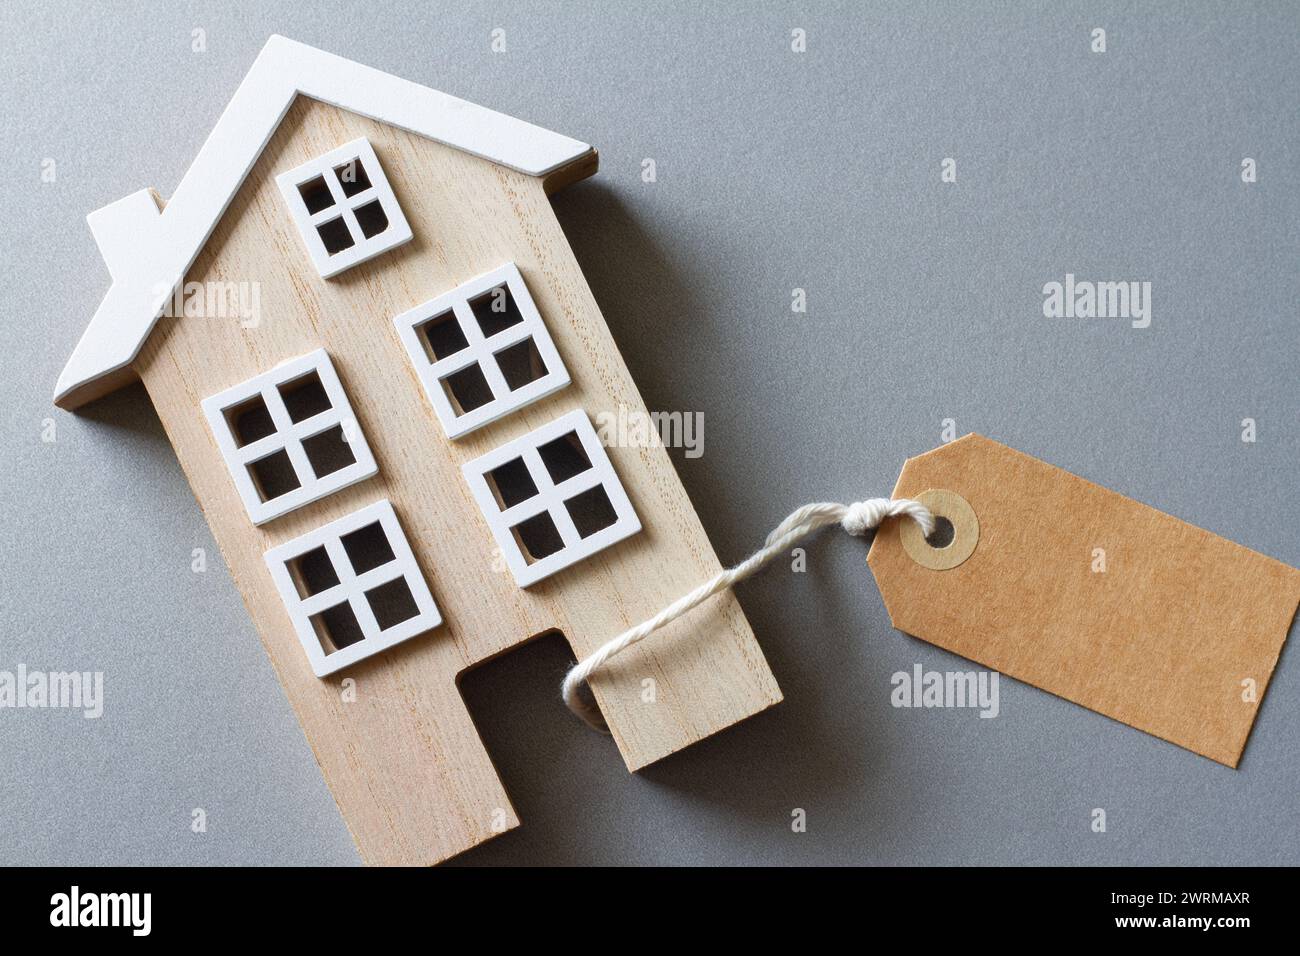 Modello in miniatura di casa in legno con etichetta, concetto di vendita, acquisto o affitto di immobili Foto Stock